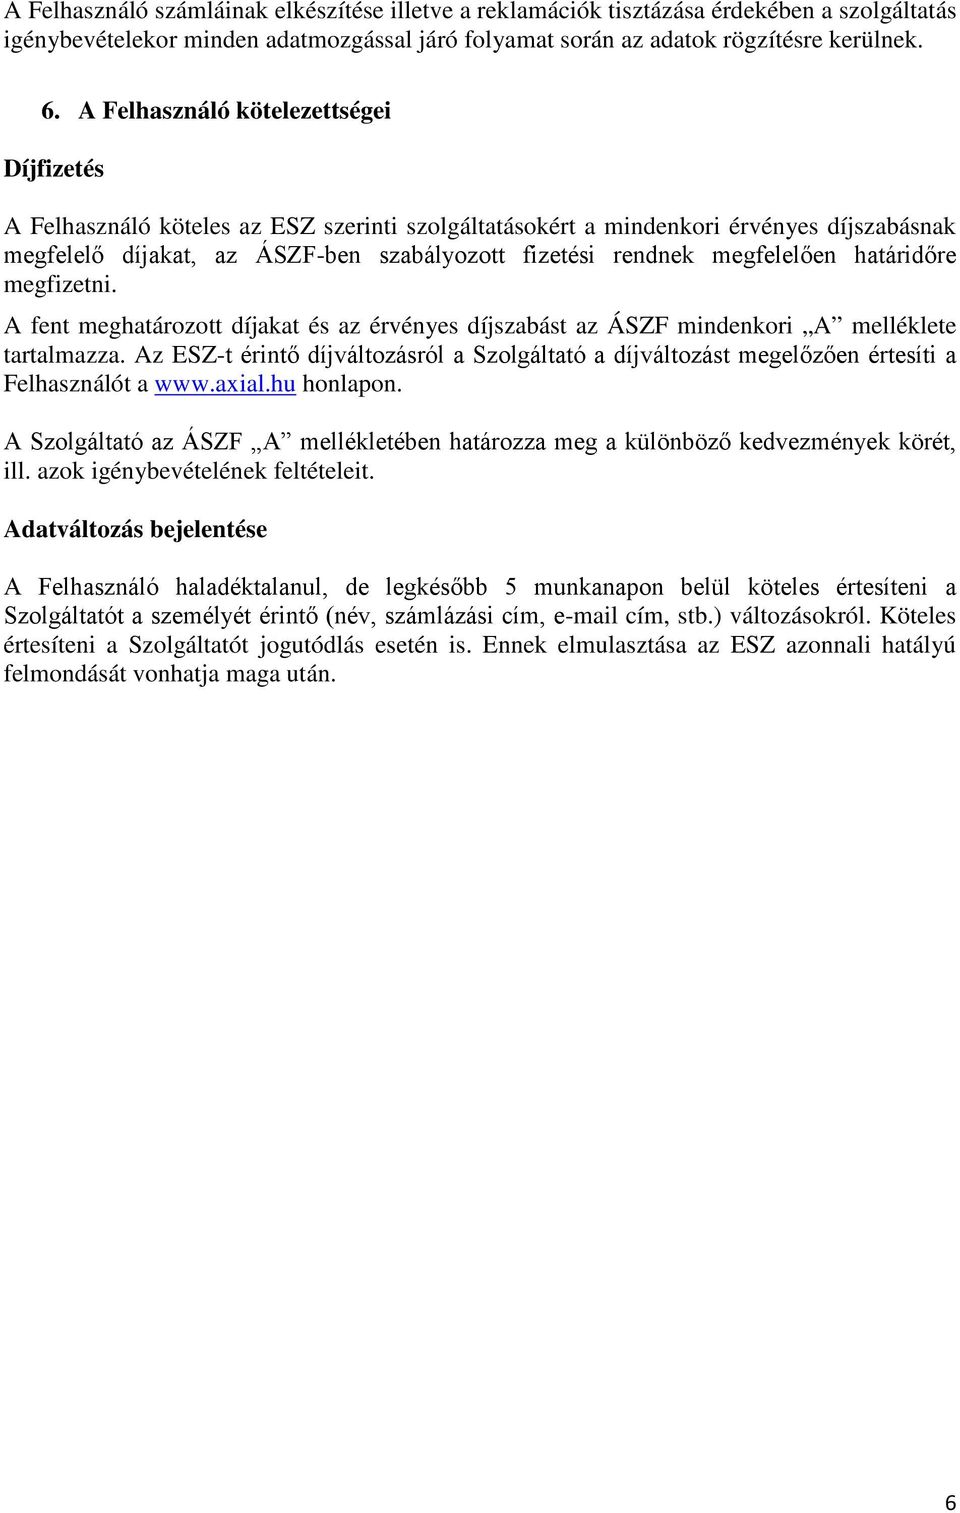 A fent meghatározott díjakat és az érvényes díjszabást az ÁSZF mindenkori A melléklete tartalmazza. Az ESZ- Felhasználót a www.axial.hu honlapon. ill.